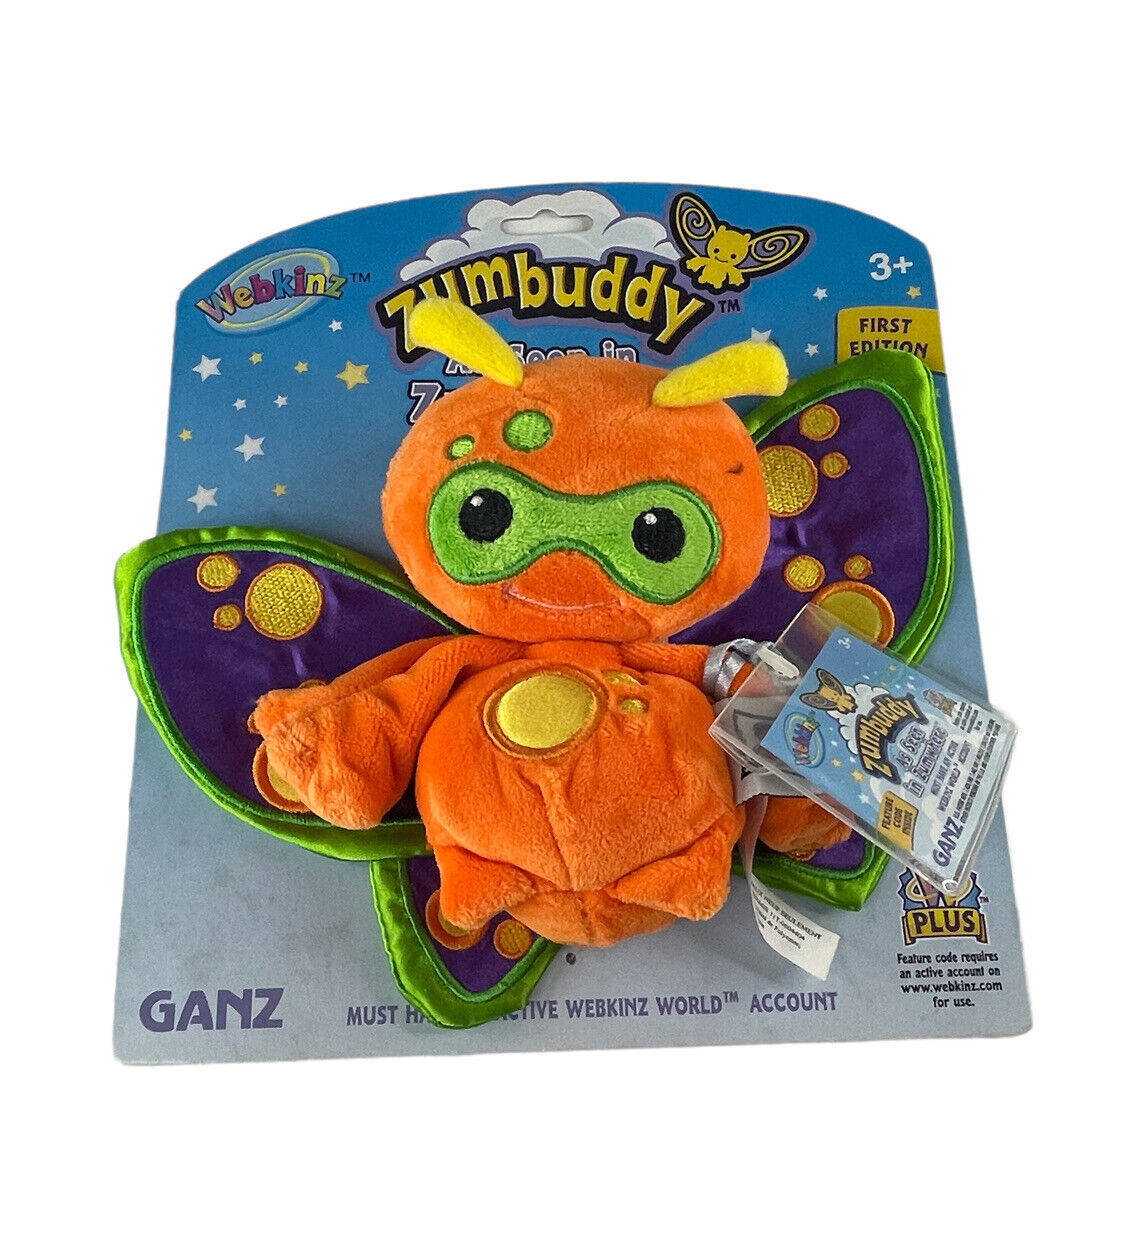 Ganz Webkinz Zumbuddy Zorth A Brat Zum Orange Code in Bag  First Edition New Ganz